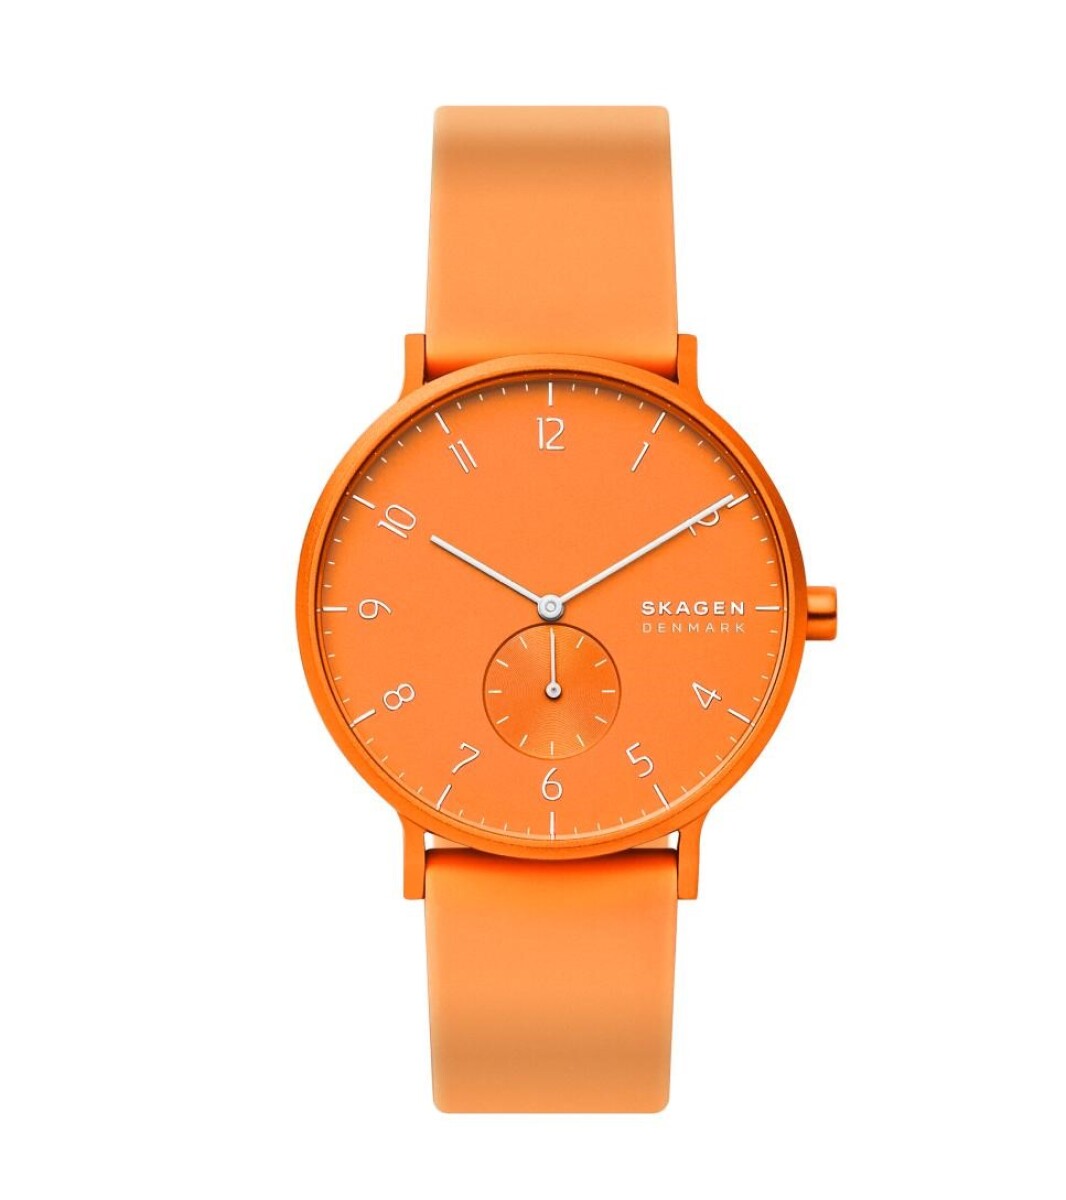 Reloj Skagen Deportivo/Fashion Silicona Naranja Neon 